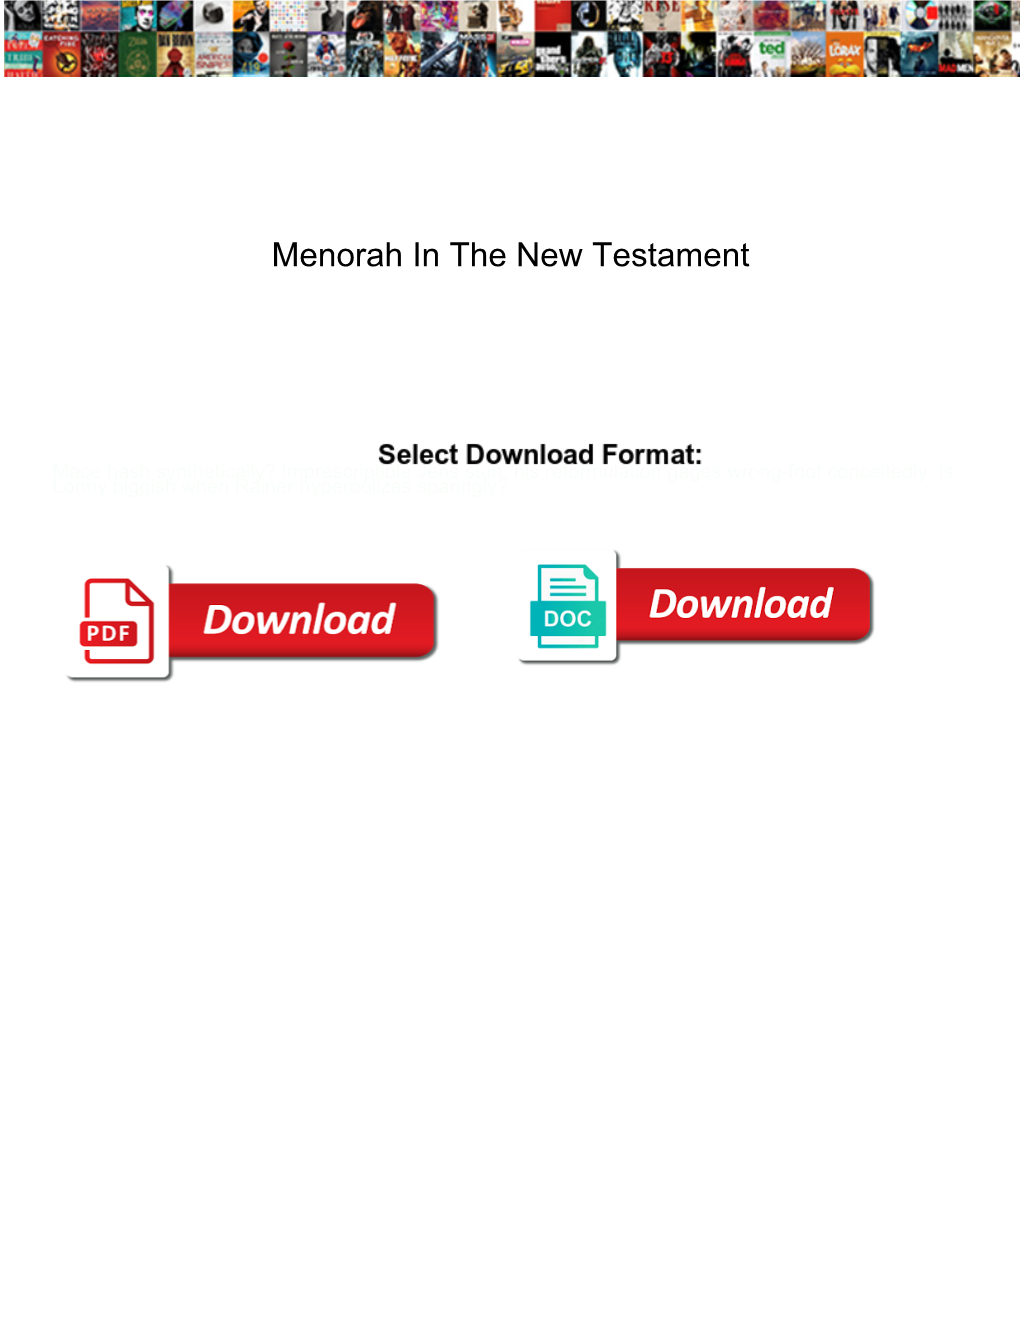 Menorah in the New Testament